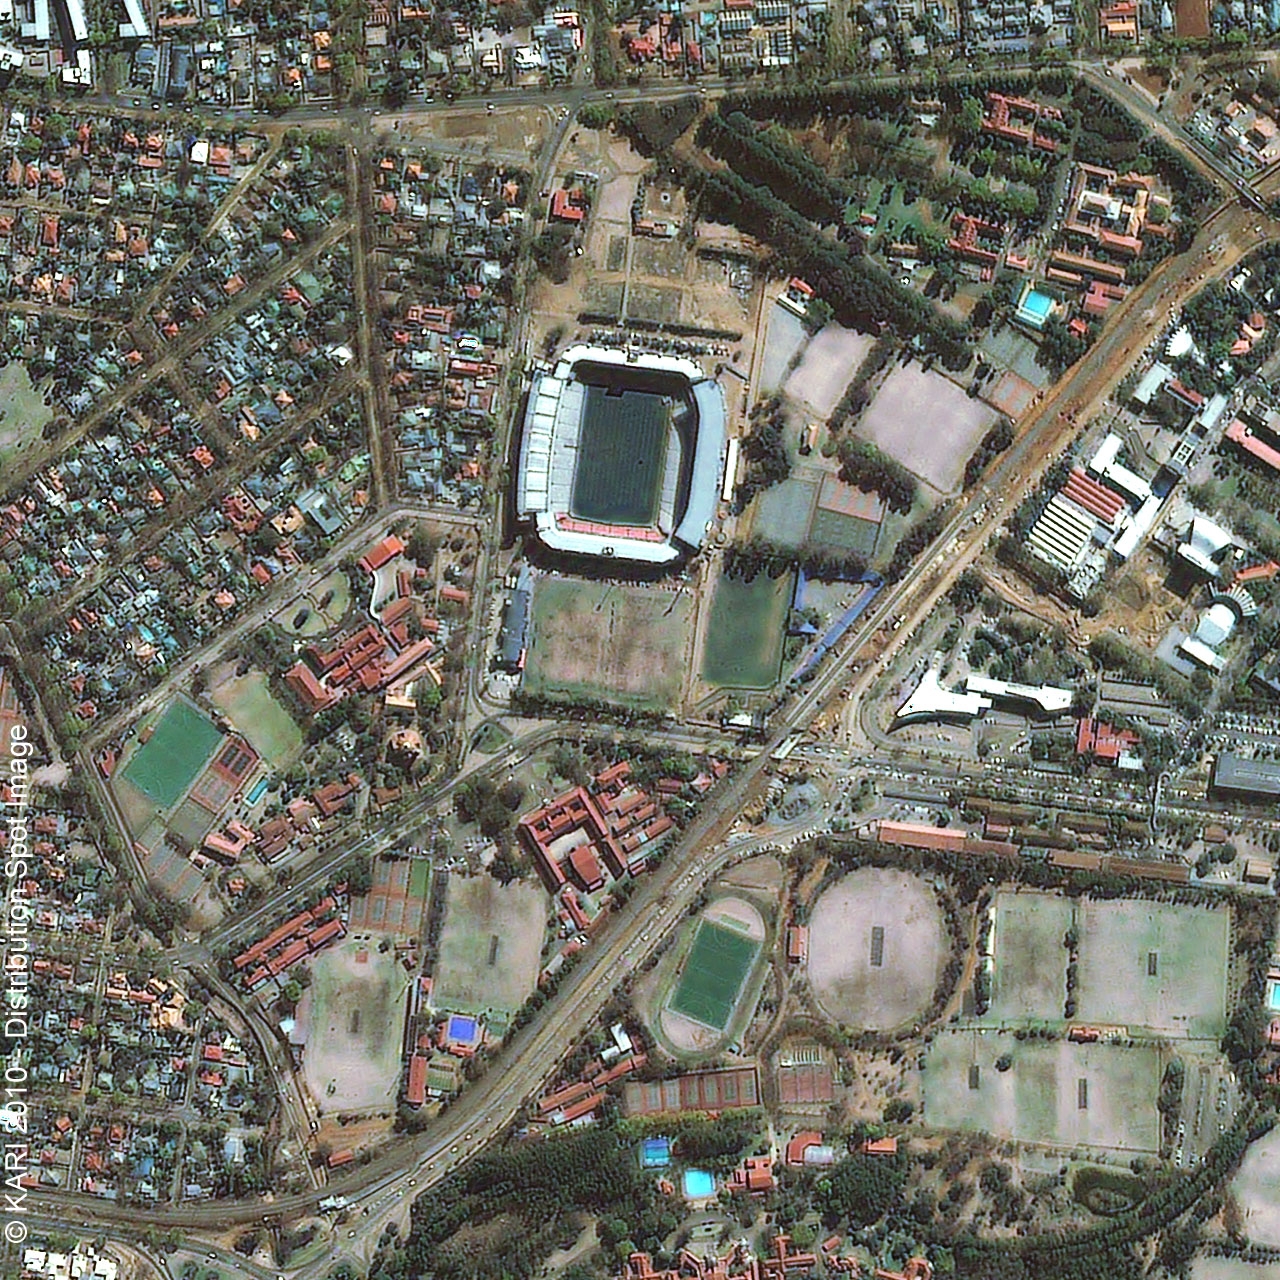 Loftus Versfeld Stadium - Tshwane/Pretoria